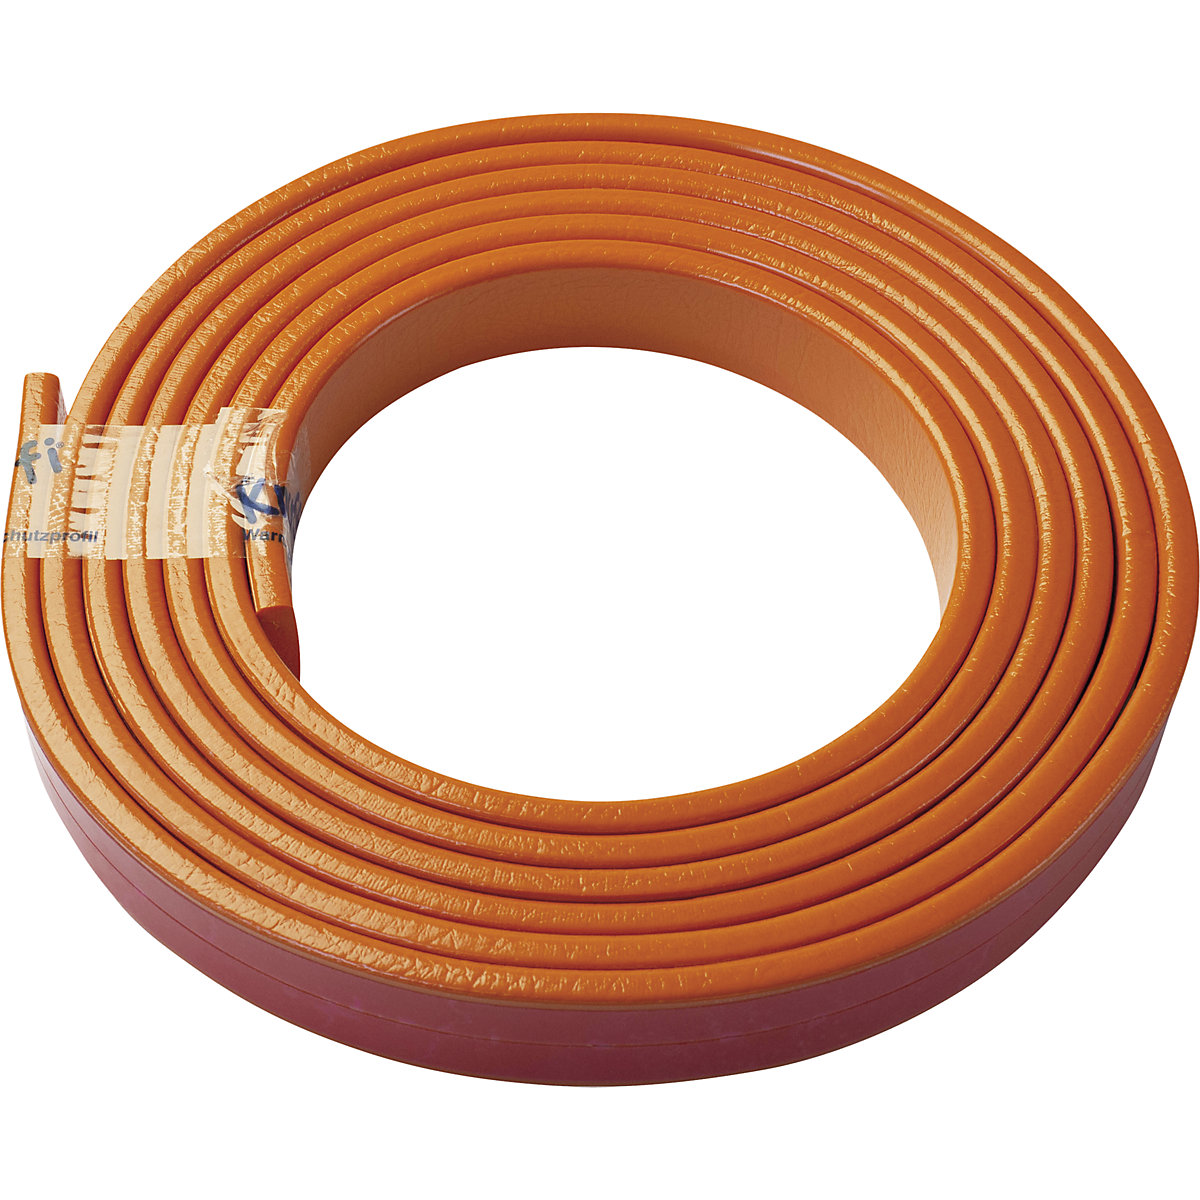 Protection des surfaces Knuffi® – SHG, type F, 1 rouleau de 5 m, orange